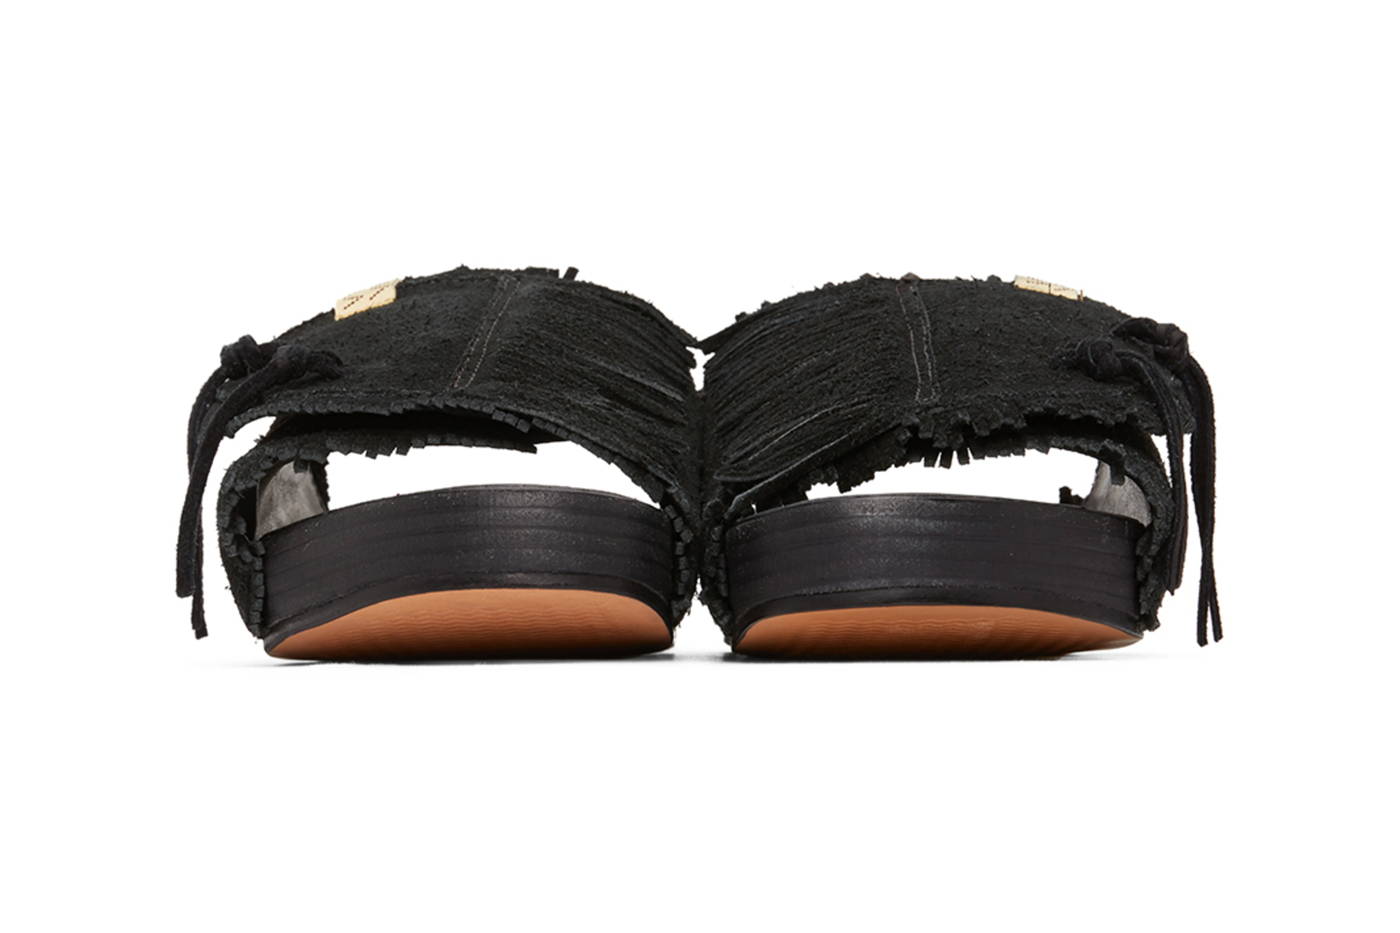 https://hypebeast.com/image/2020/05/visvim-christo-shaman-folk-sandals-in-black-release-003.jpg